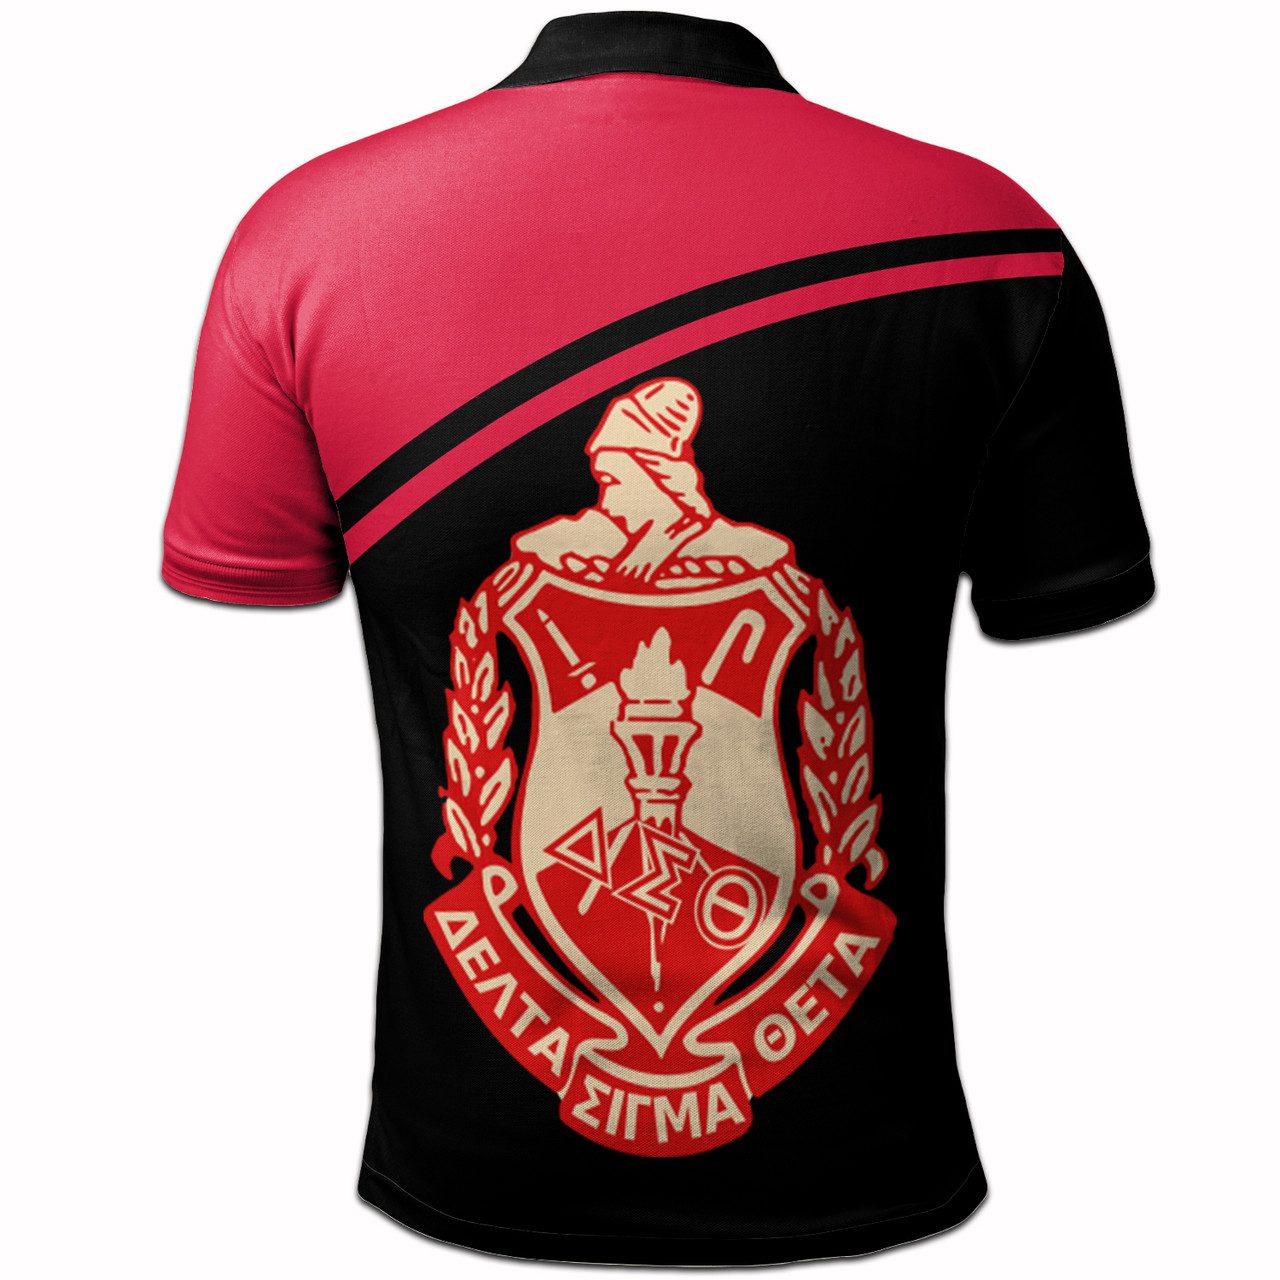 Delta Sigma Theta Polo Shirt – Sorority Curve Version Polo Shirt